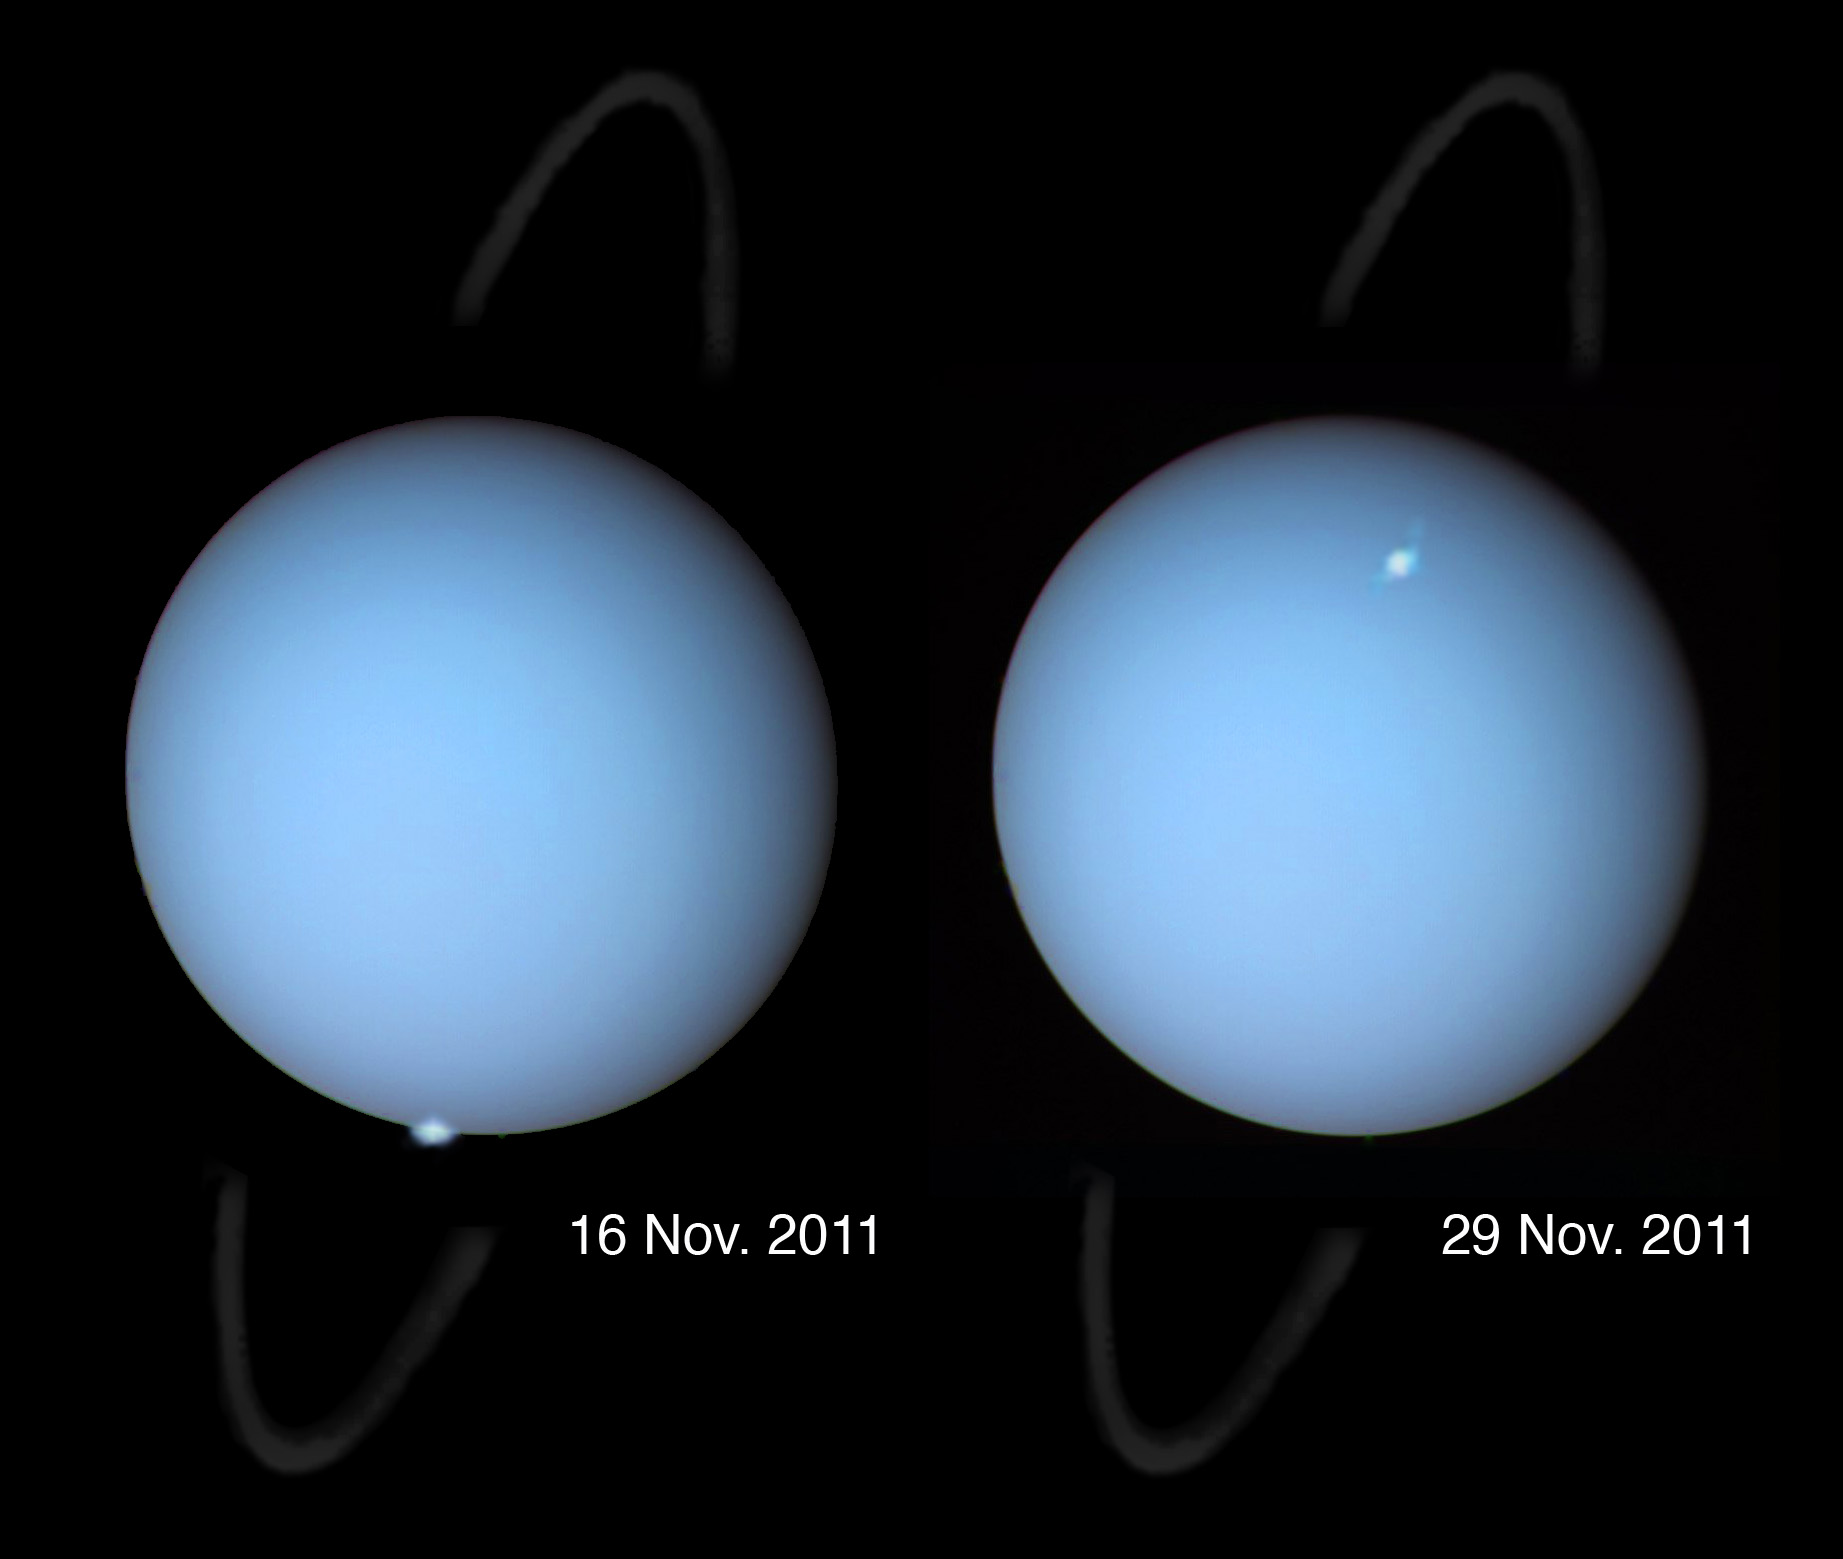 Uranus aurorae in 2011